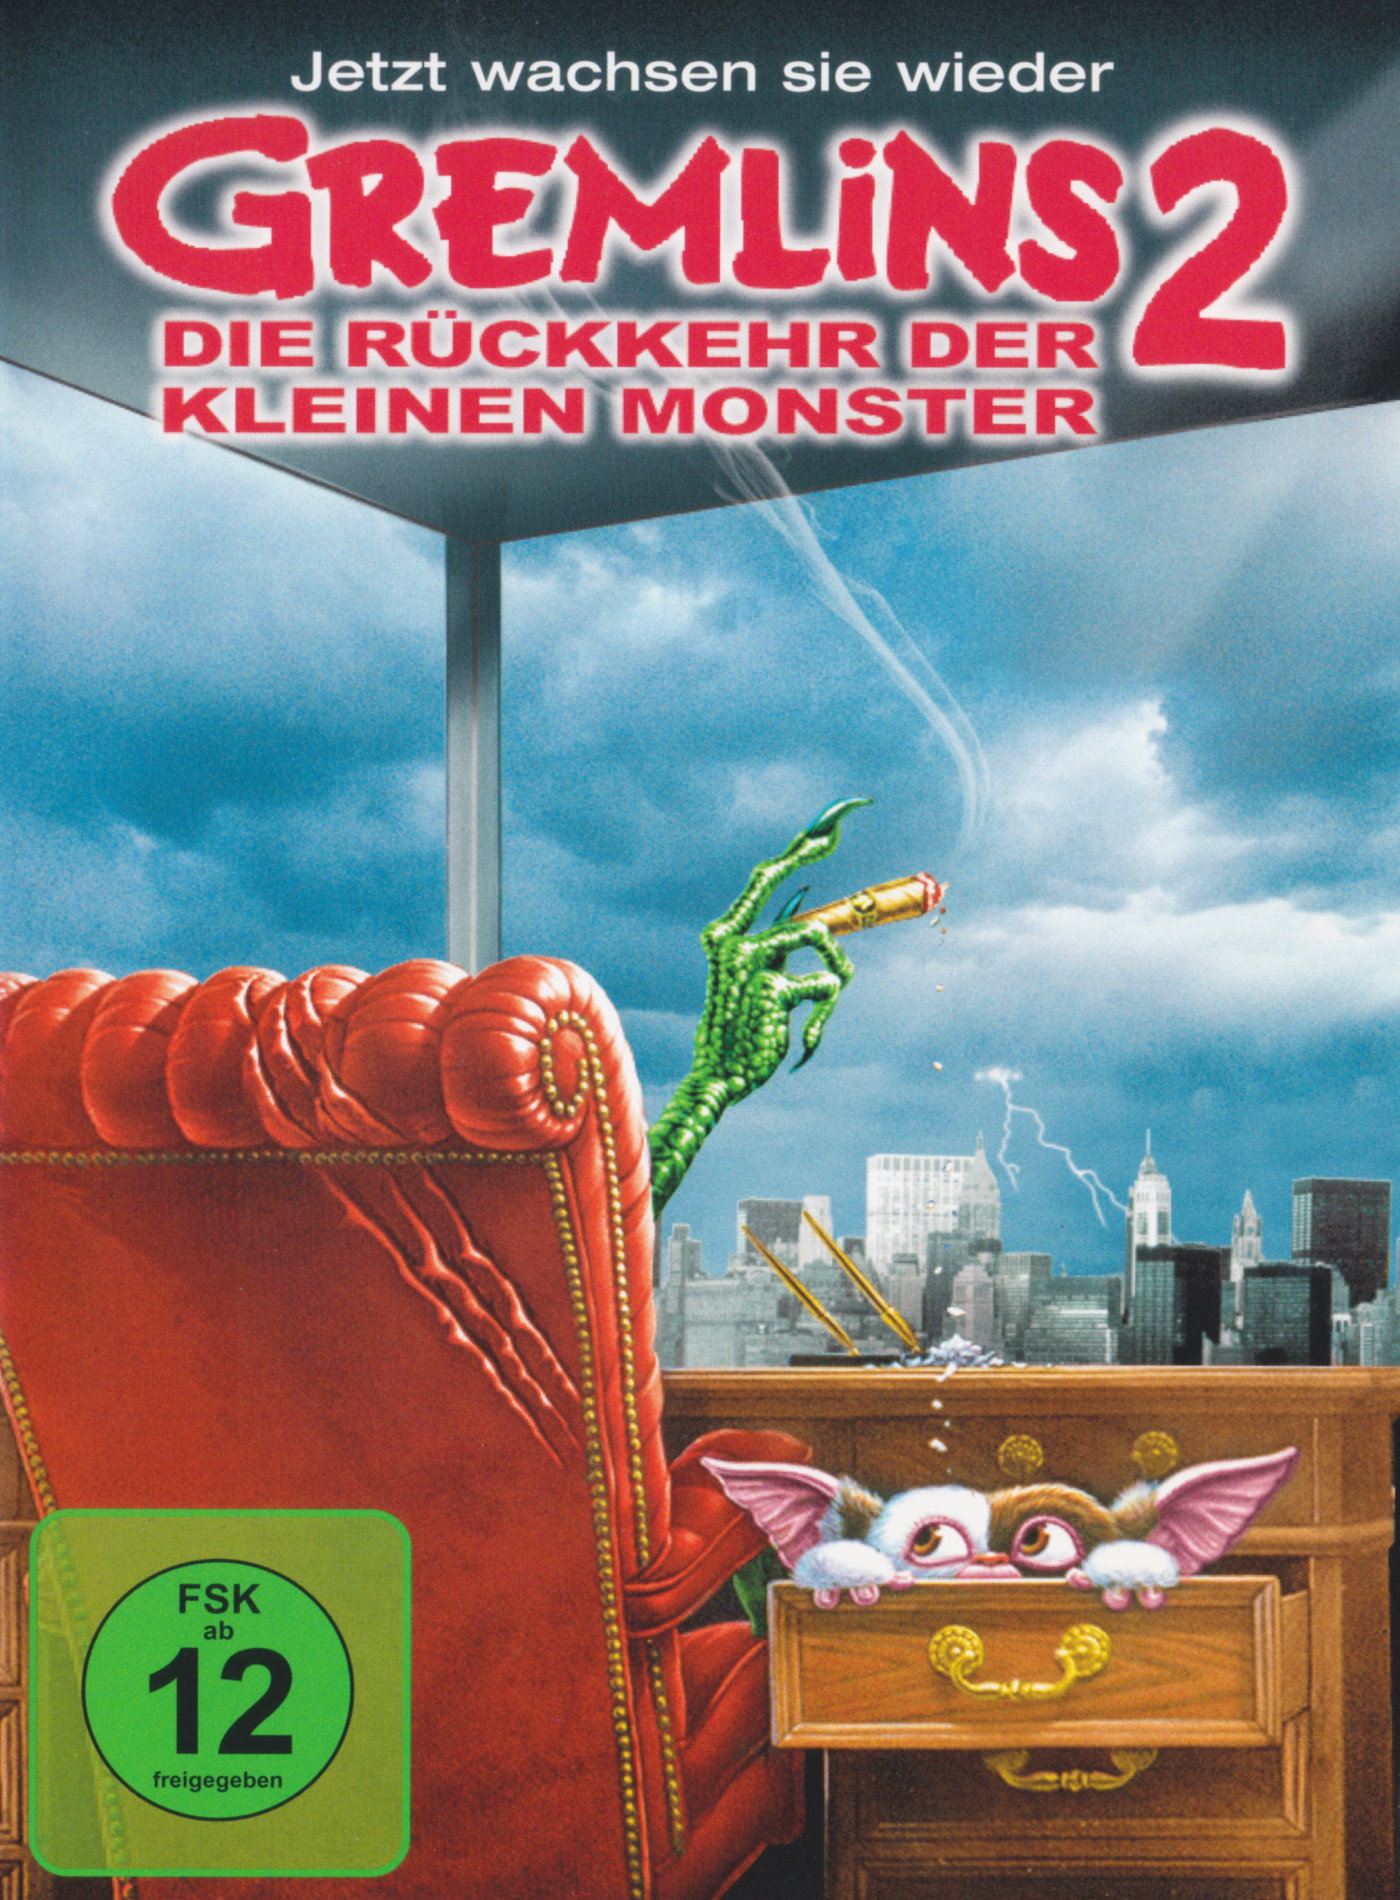 Cover - Gremlins 2 - Die Rückkehr der kleinen Monster.jpg